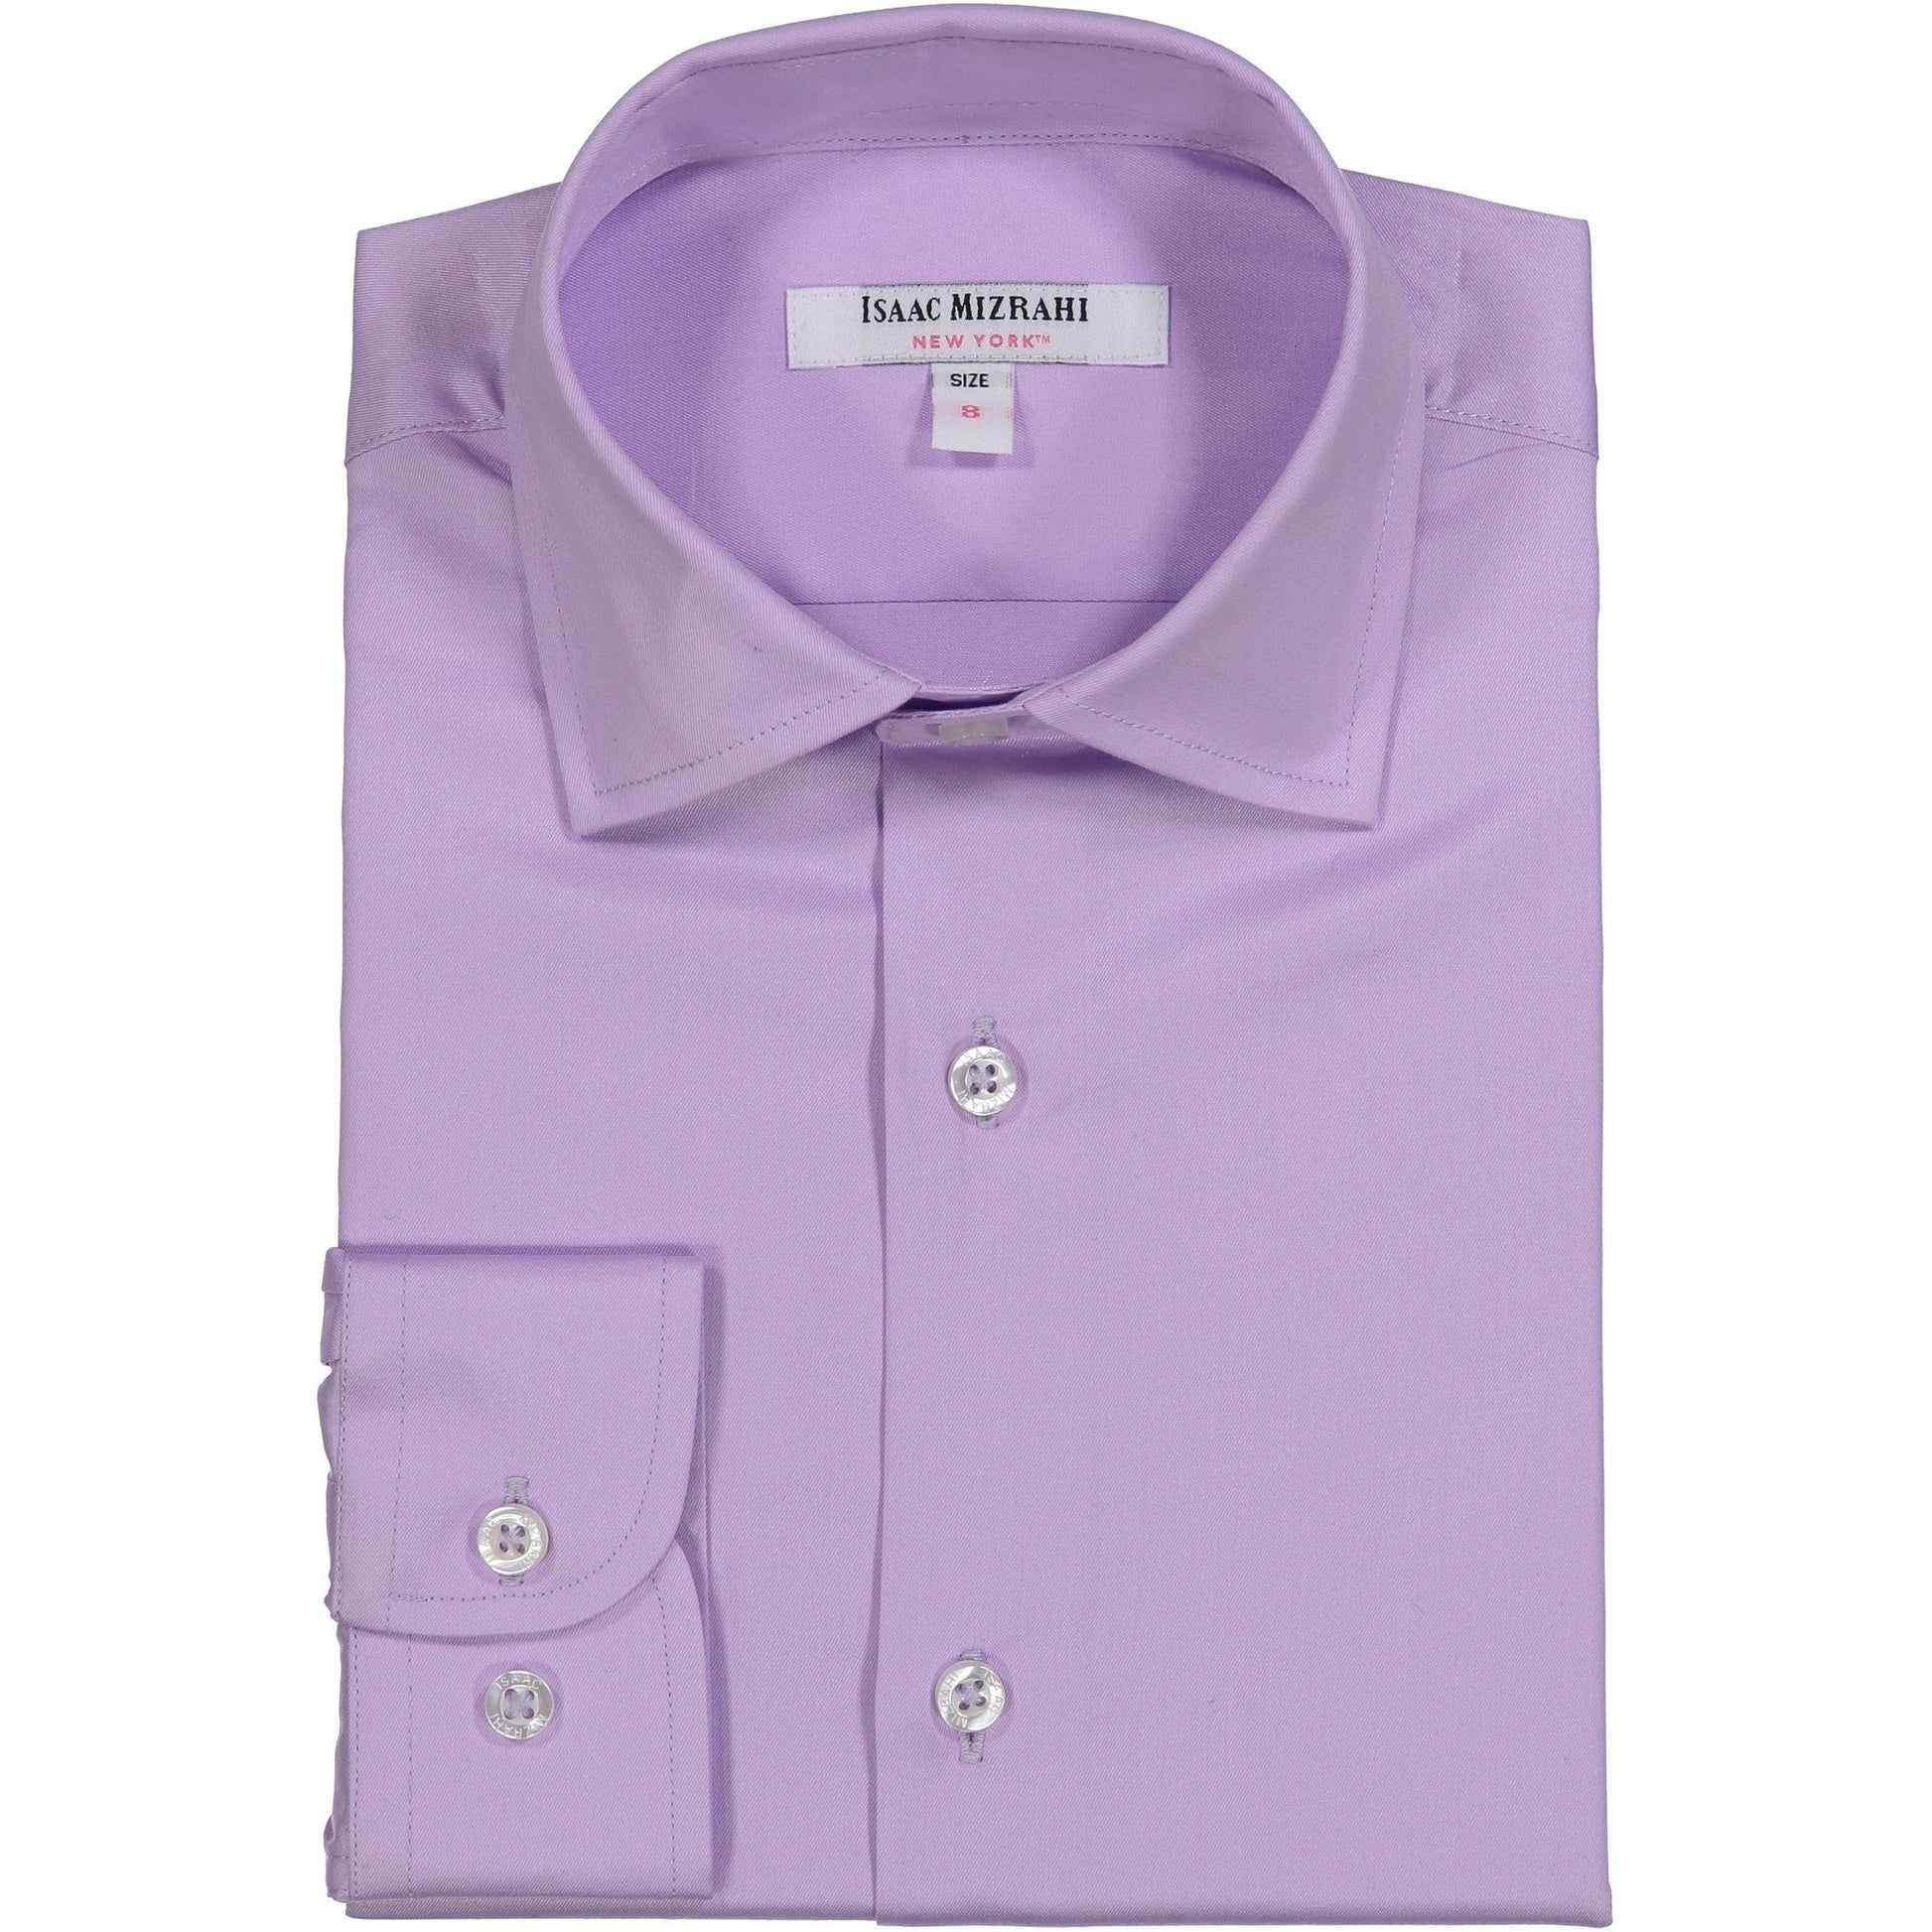 Isaac Mizrahi Boys Lavender Dress Shirt Dress Shirts Isaac Mizrahi 